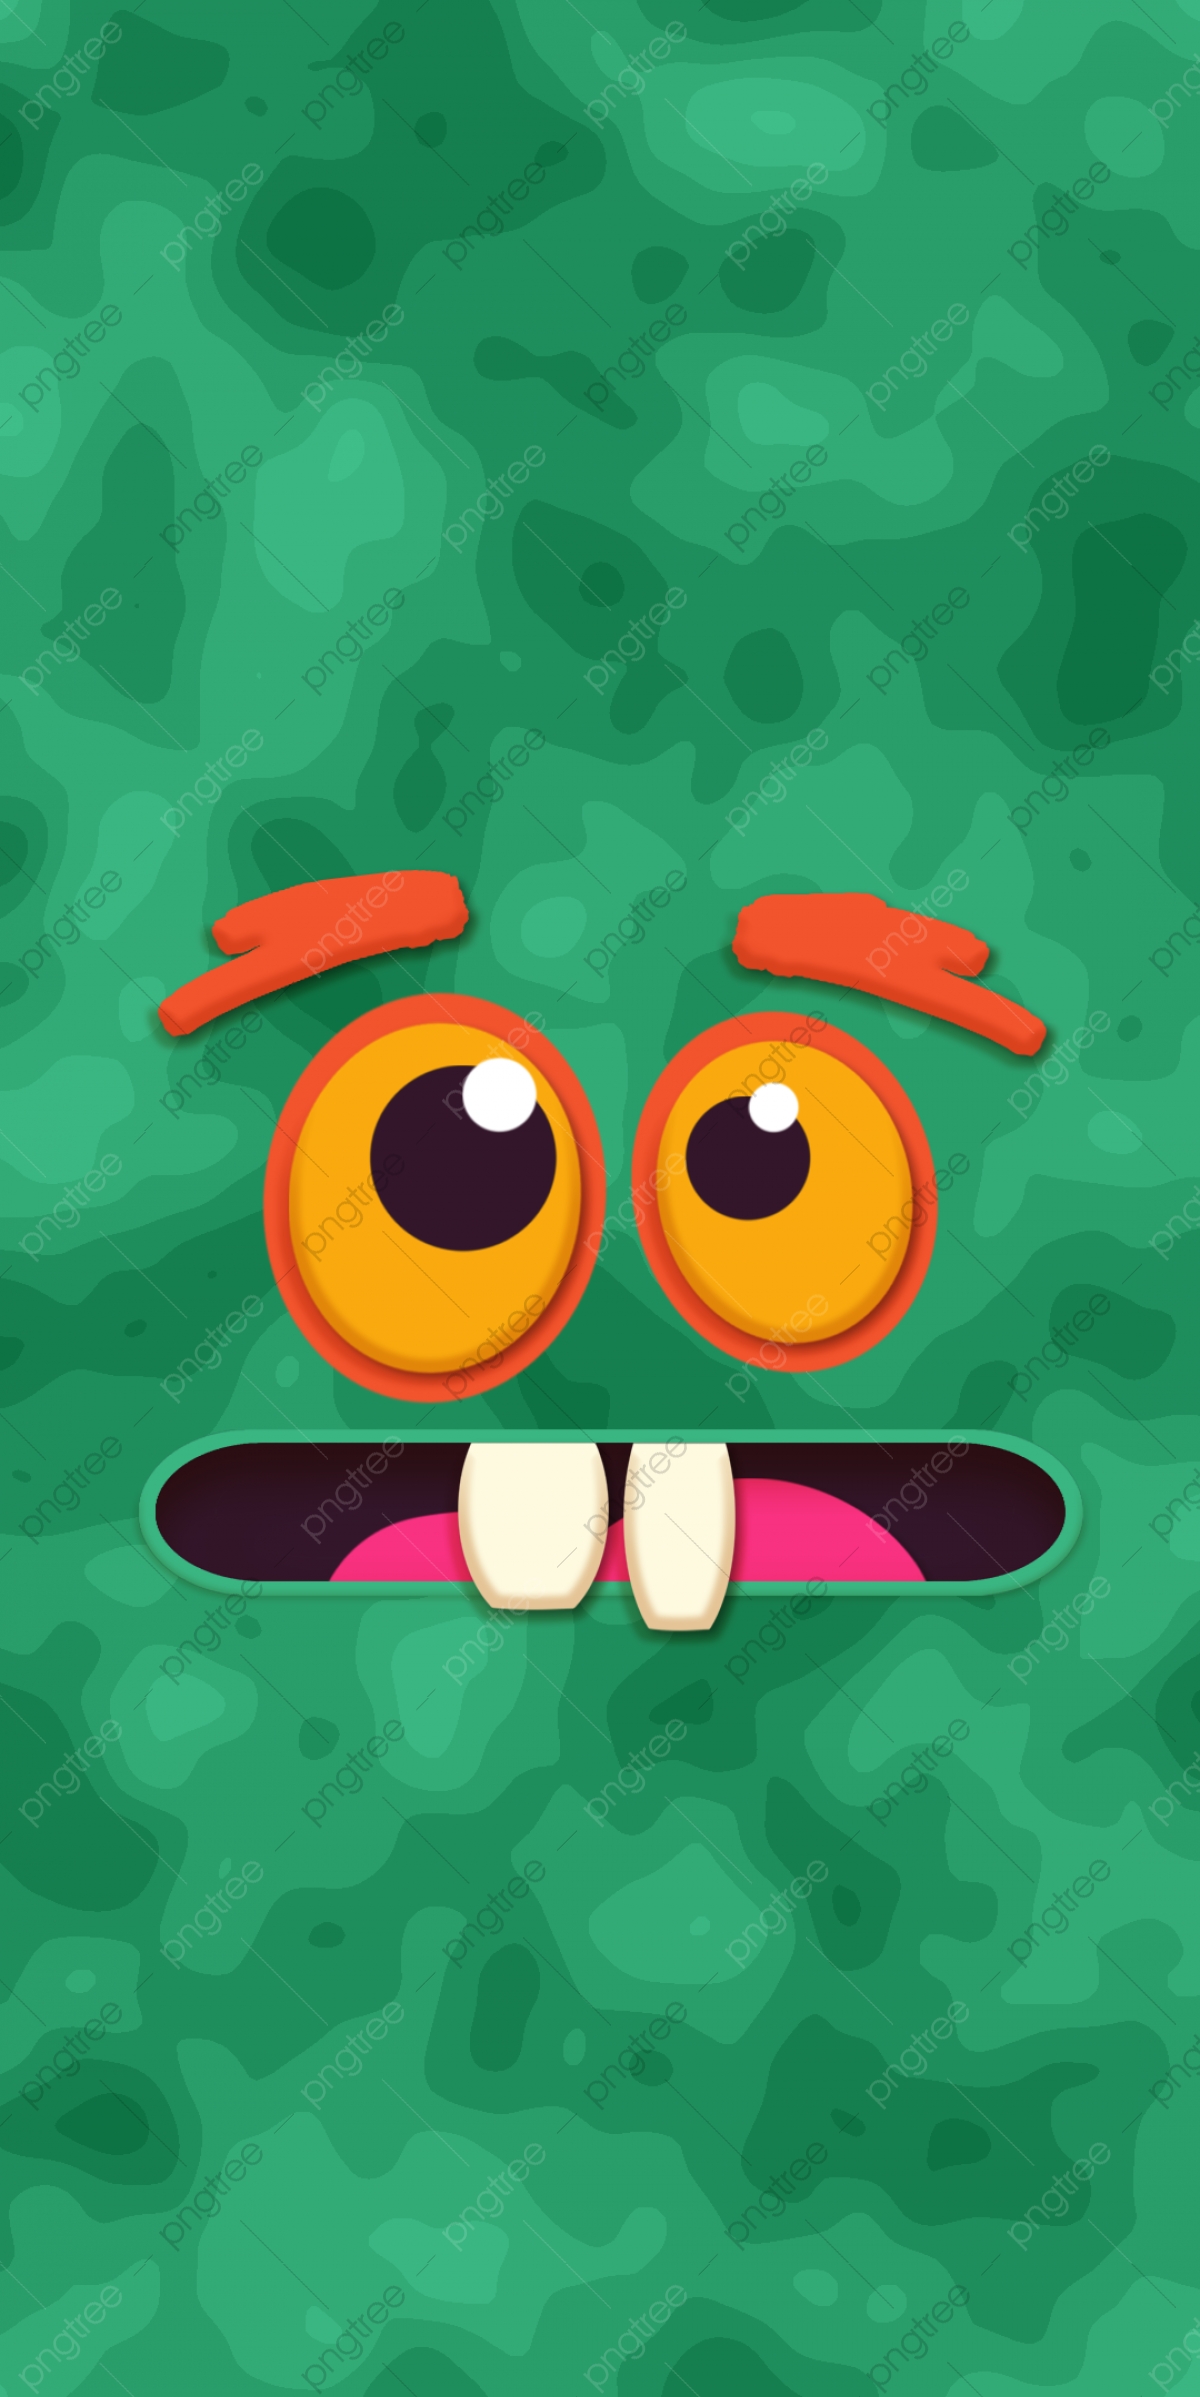 Cartoon Cute Monster Face Background, Cartoon, Monster Face, Green Background Image for Free Download